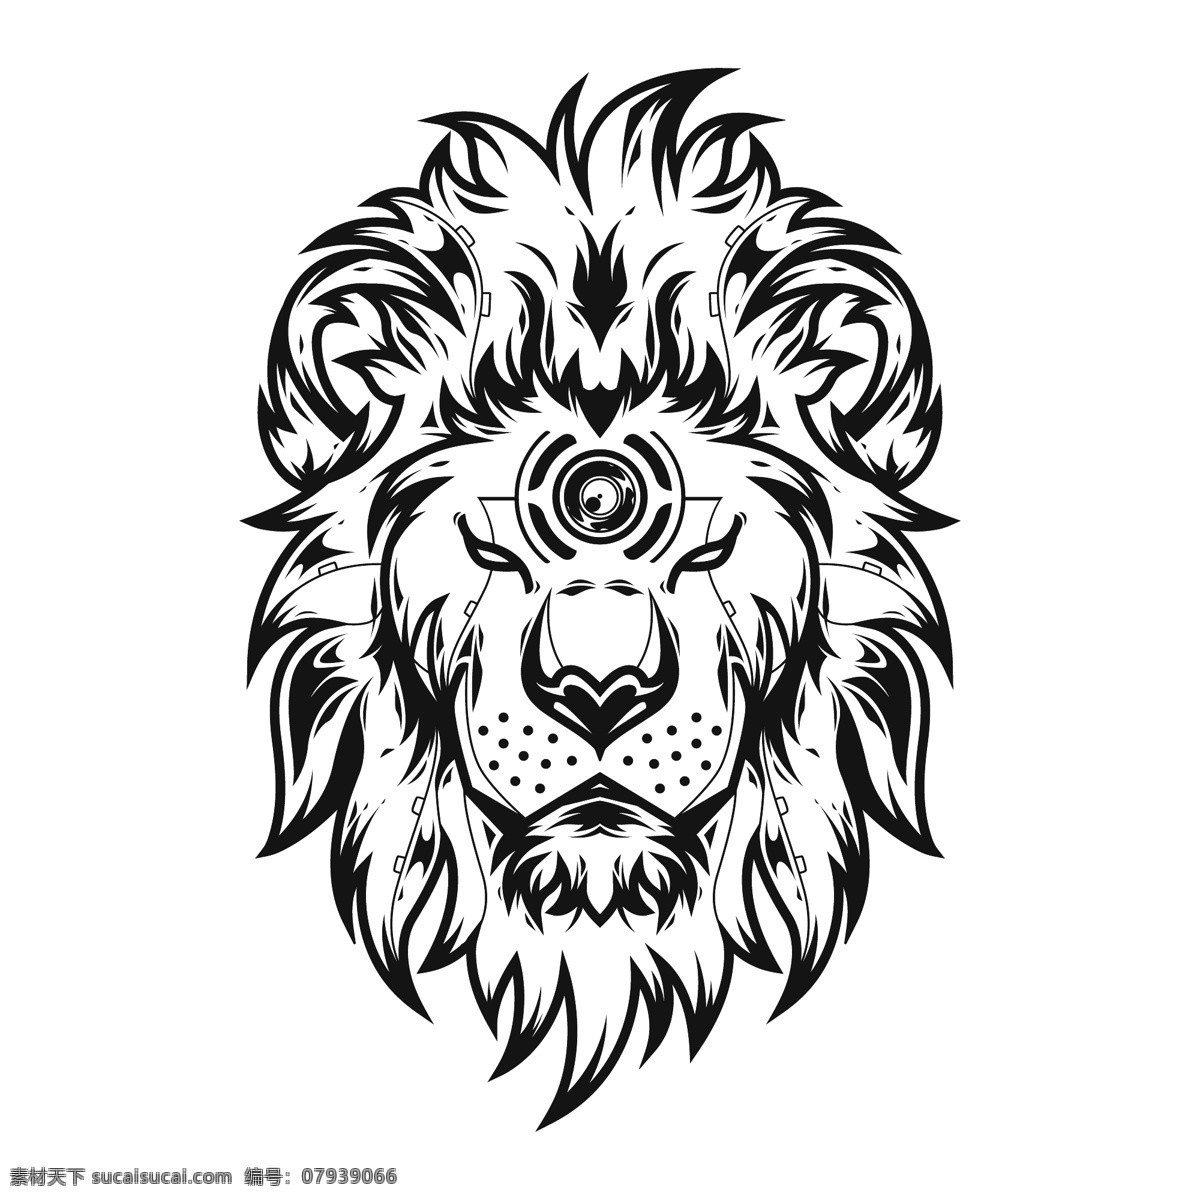 狮子图标 狮子头像 标志 logo雄狮 狮子 雄狮 狮子图腾 美洲狮 凶恶狮子 雄厚 图腾 动物图腾 公狮 金狮 彩色狮子 金色狮子 狮子头 狮子手绘 卡通狮子 狮子插画 动物插画 动物卡通 狮子商标 狮子logo 狮子卡片 logo设计